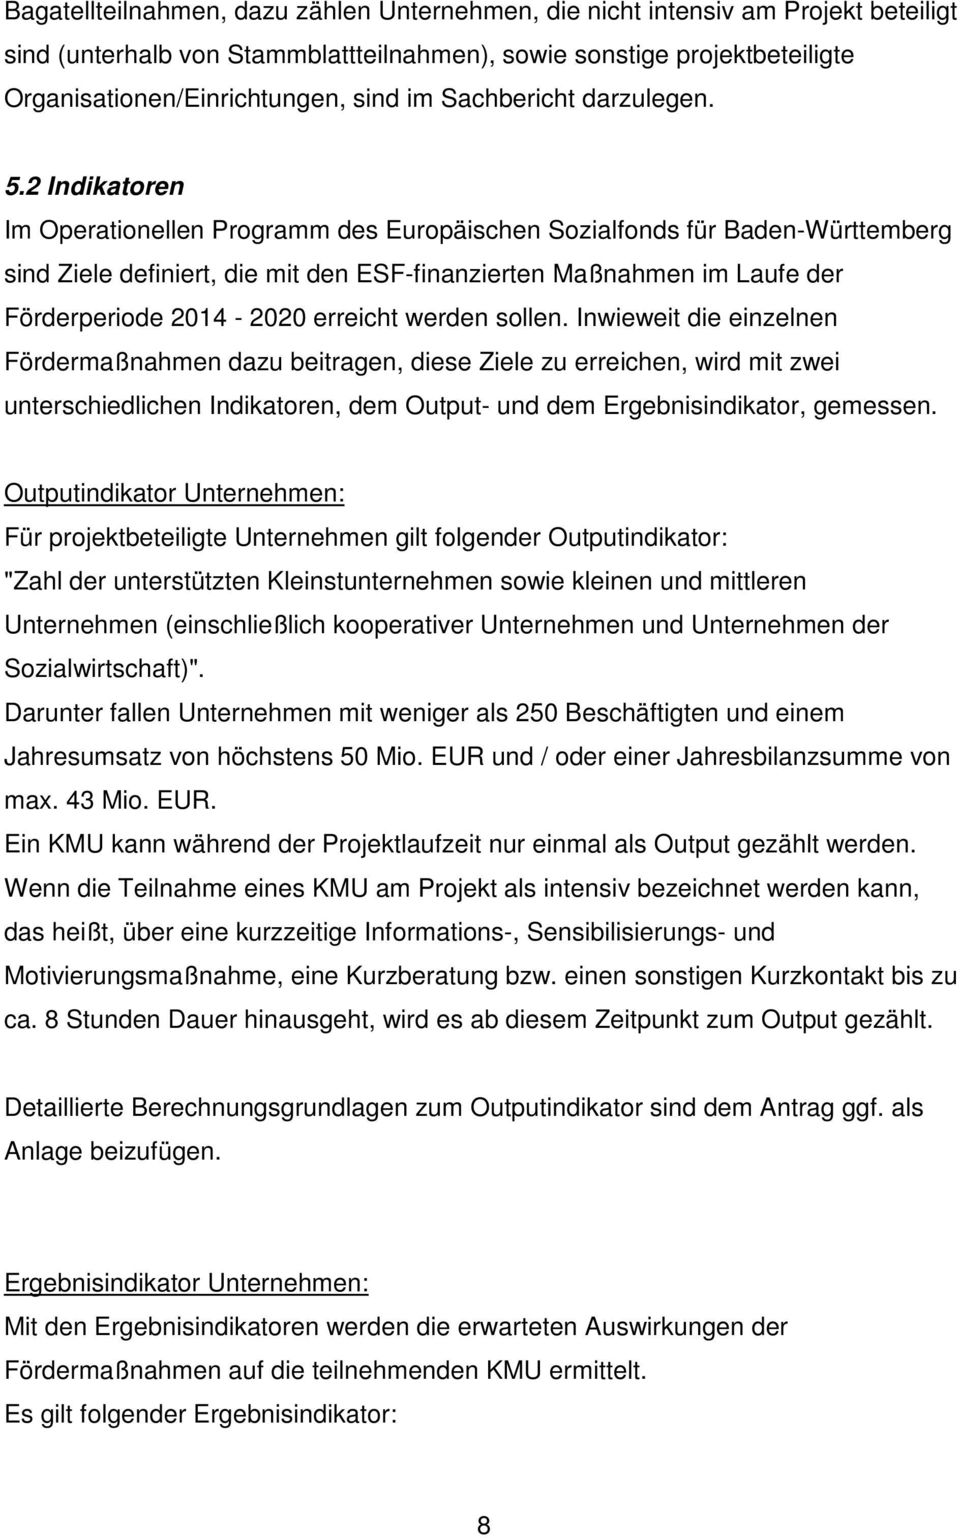 2 Indikatoren Im Operationellen Programm des Europäischen Sozialfonds für Baden-Württemberg sind Ziele definiert, die mit den ESF-finanzierten Maßnahmen im Laufe der Förderperiode 2014-2020 erreicht